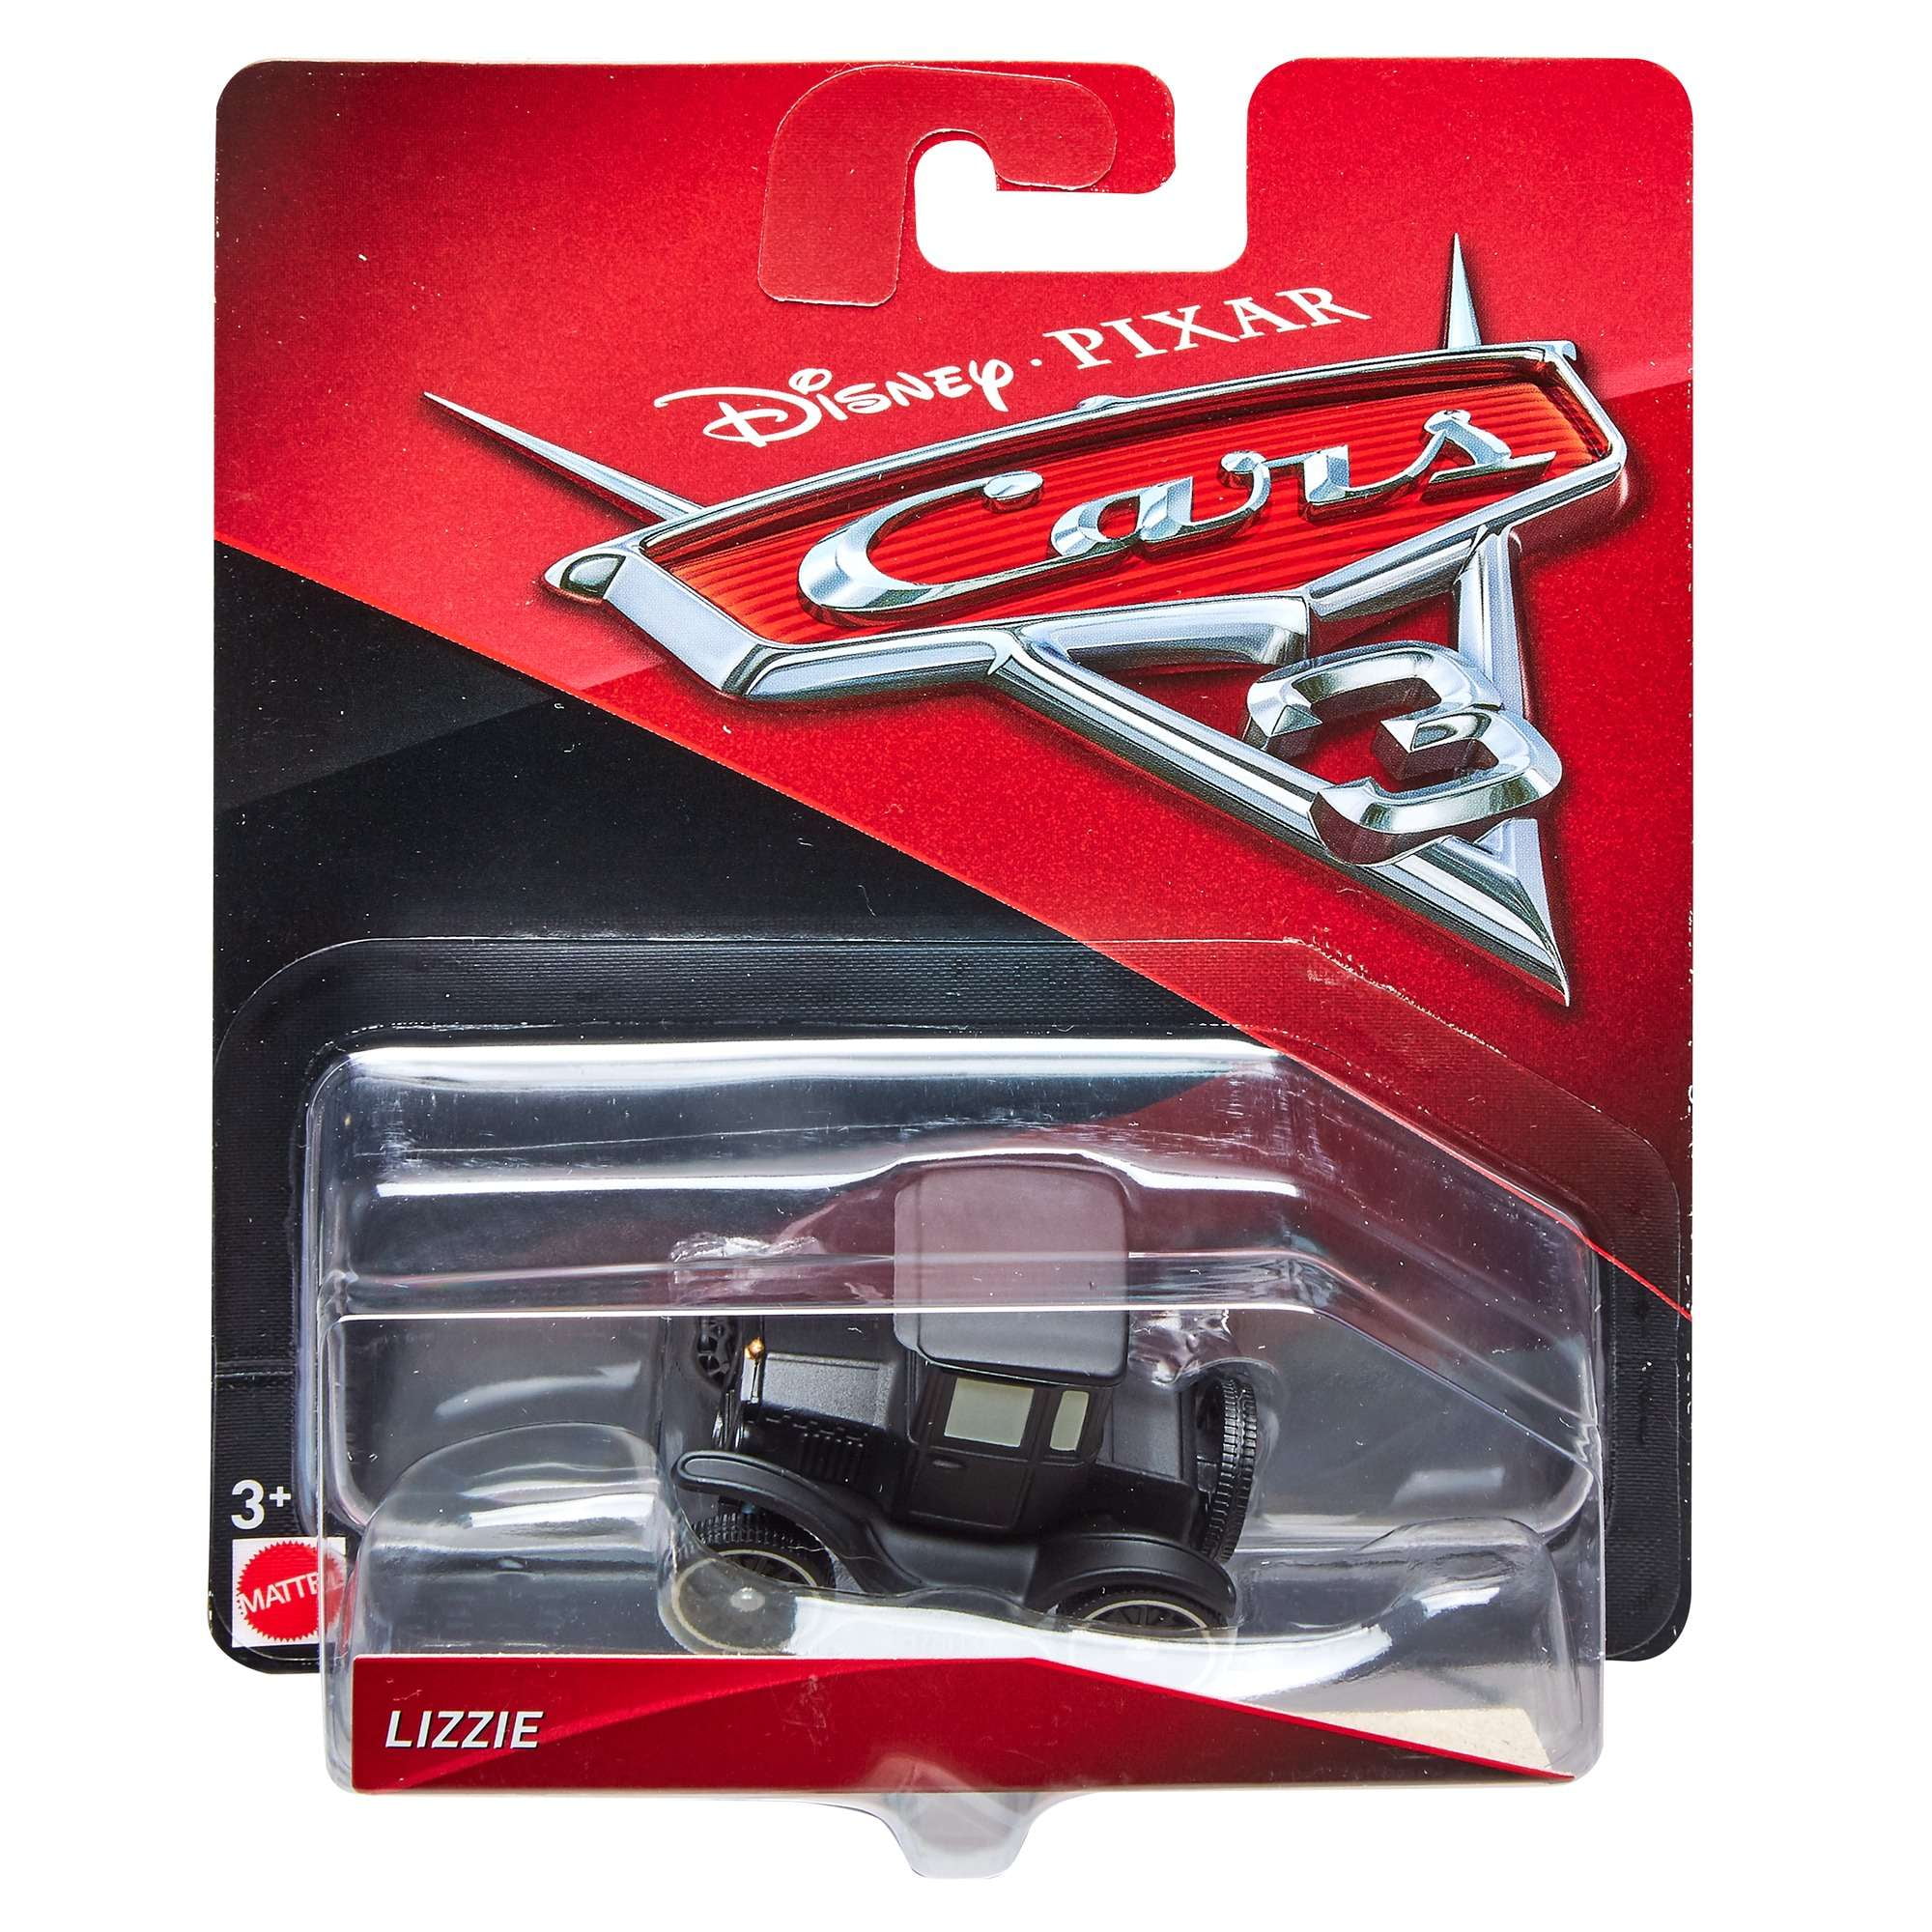 Mattel Disney Pixar Cars 3 Lizzie 1:55 Car Metal Diecast Toy Vehicle Loose New 